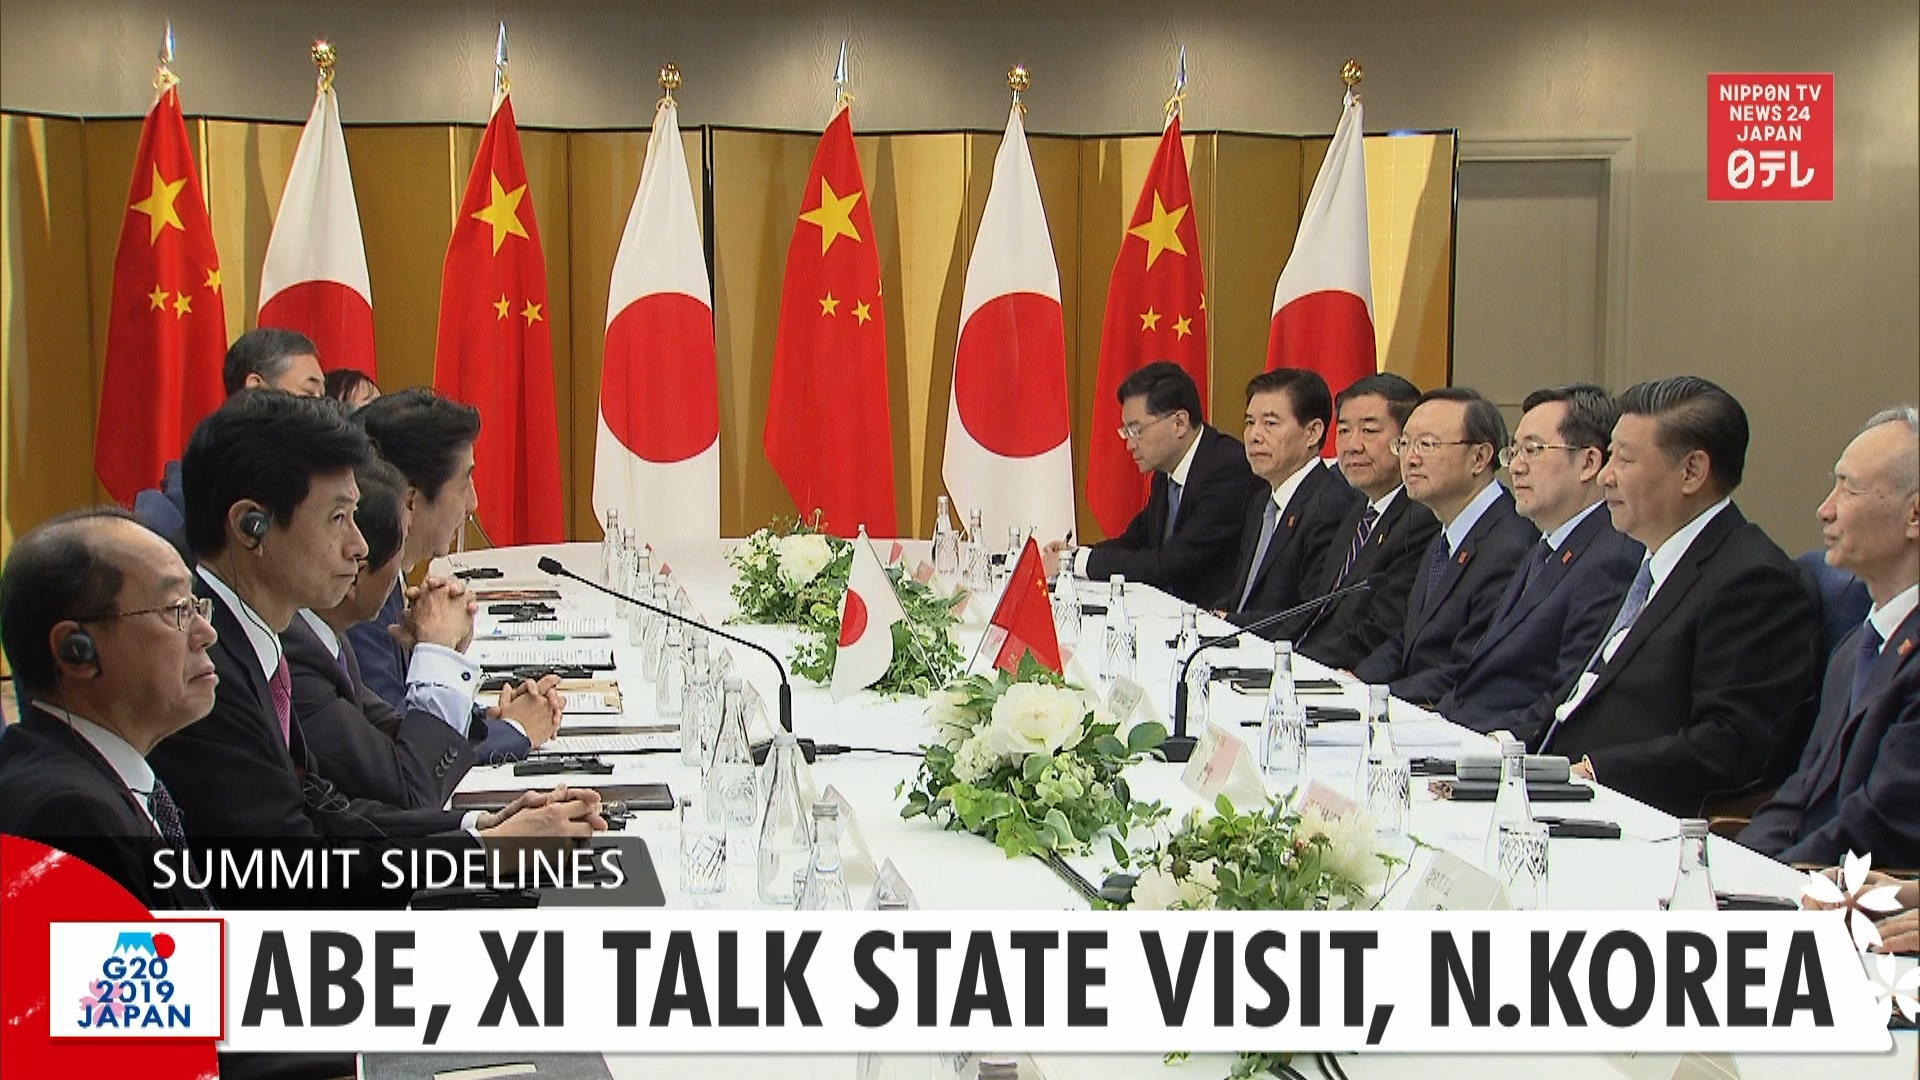 G20: Abe, Xi talk state visit, N.Korea